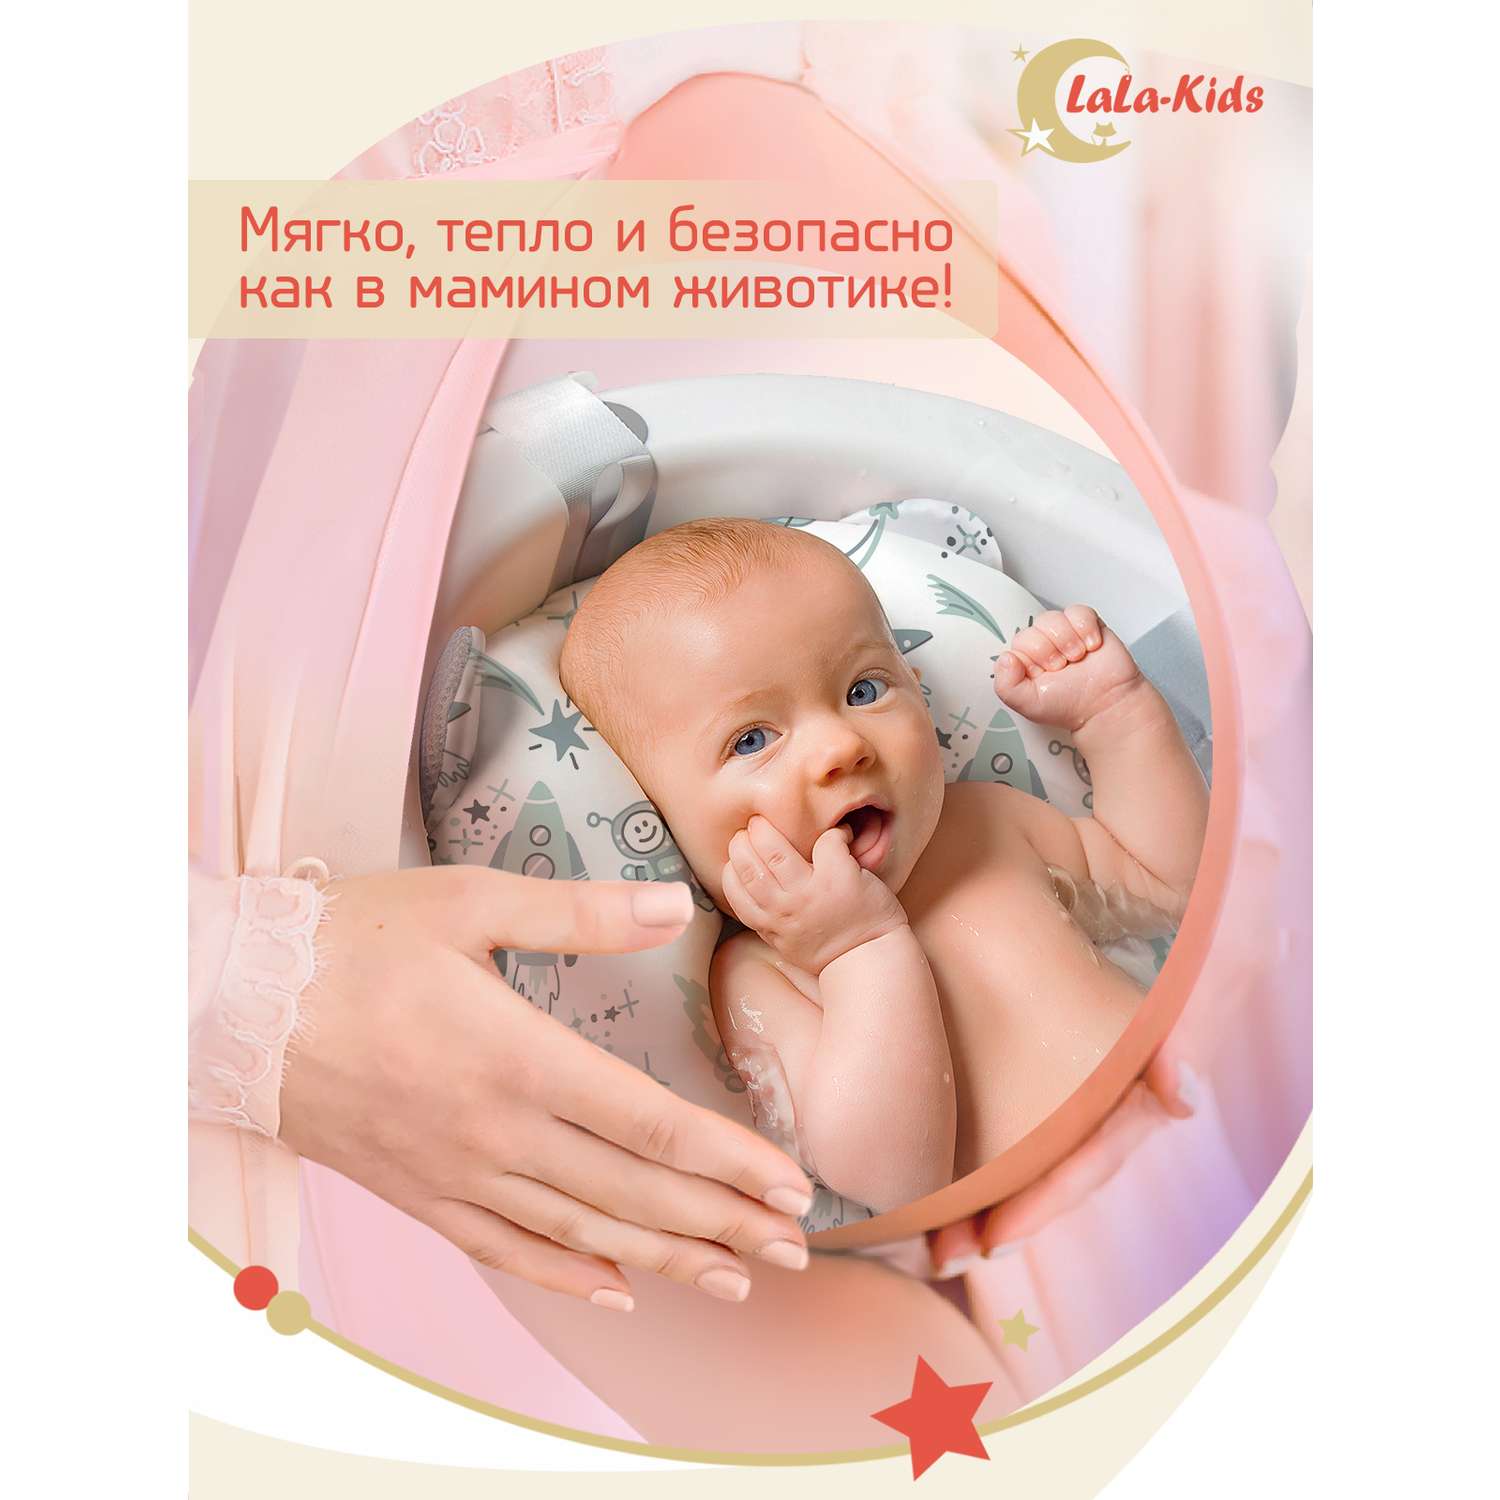 Складная ванночка LaLa-Kids для купания новорожденных с термометром и матрасиком в комплекте - фото 14